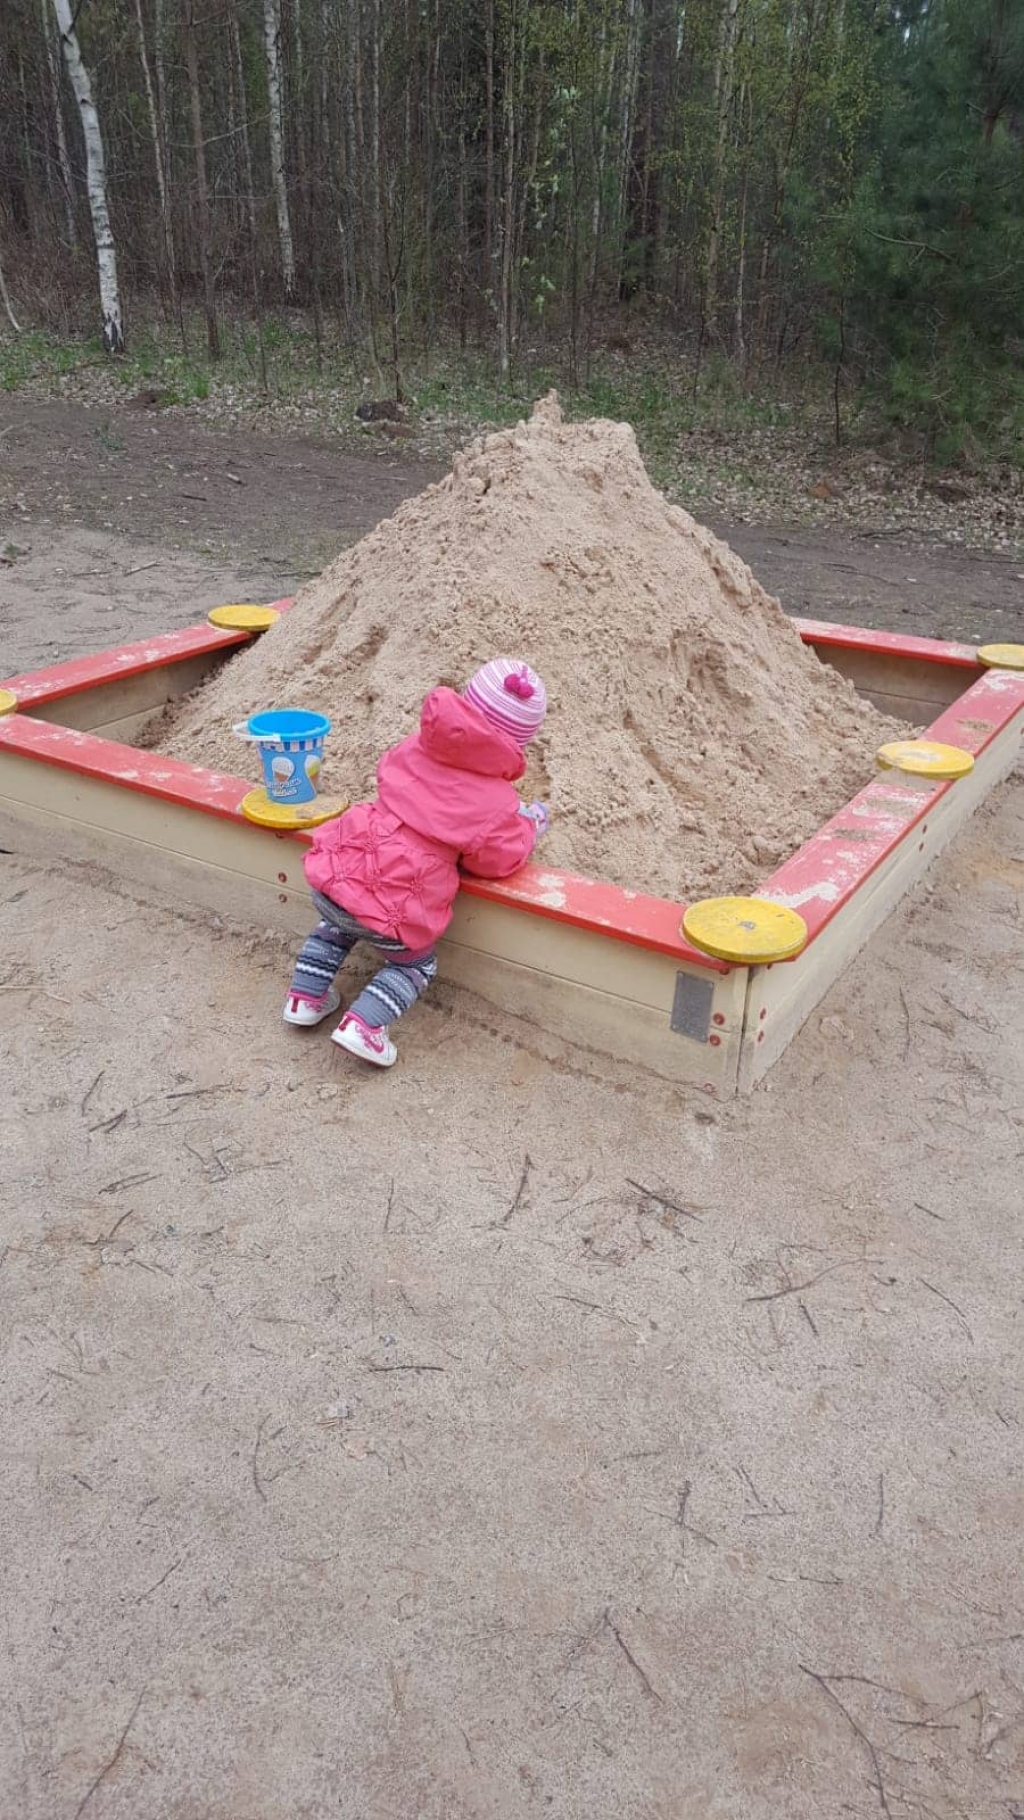 Aculiecinieki ziņo: Jēkabpils Mežaparka rotaļu laukuma smilškastei atvestas smiltis (FOTO)